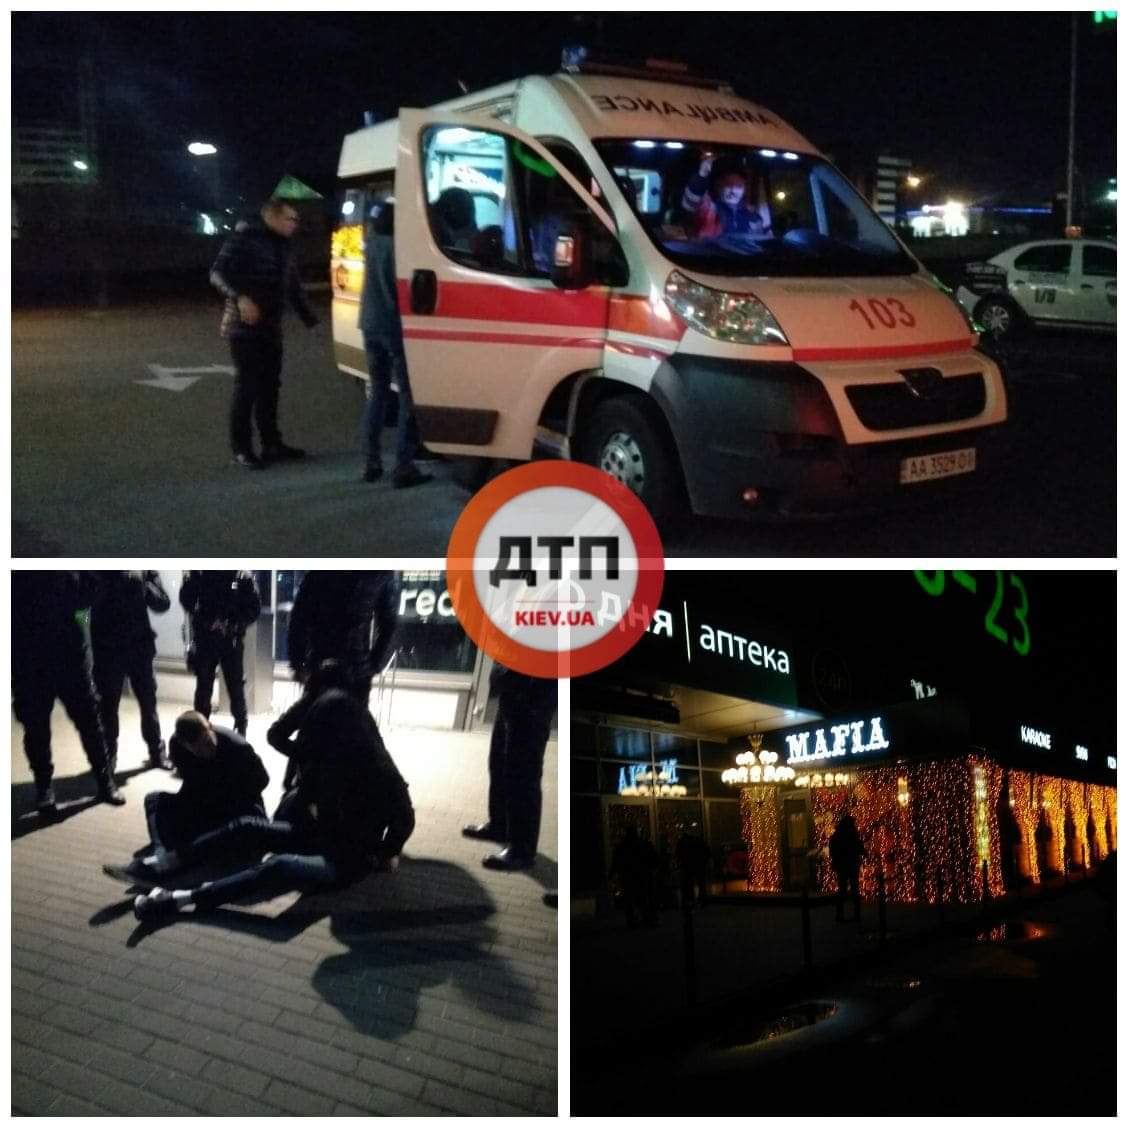 В Киеве на Броварском проспекте в ресторане пьяная компания отказалась оплатить счёт и побила охранника: подробности